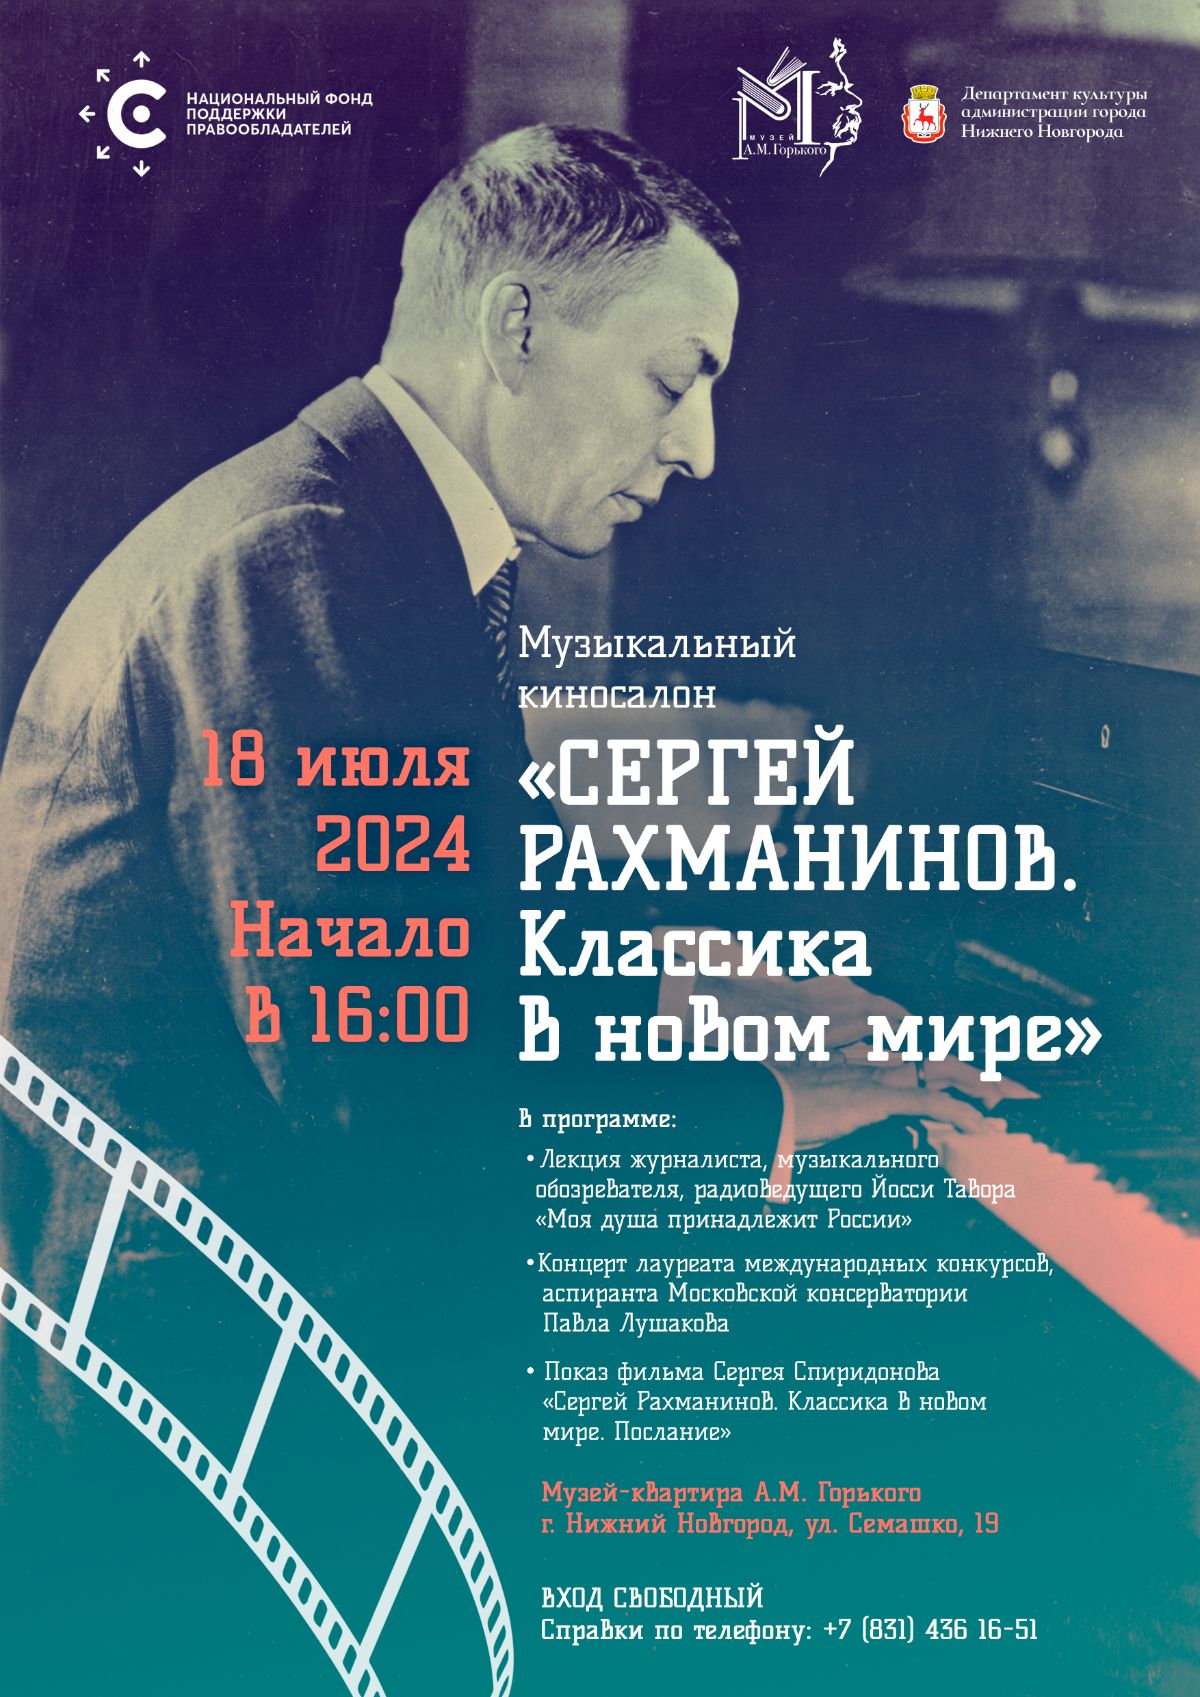 НФПП проведет музыкальный киносалон «Сергей Рахманинов. Классика в новом мире» в Нижнем Новгороде